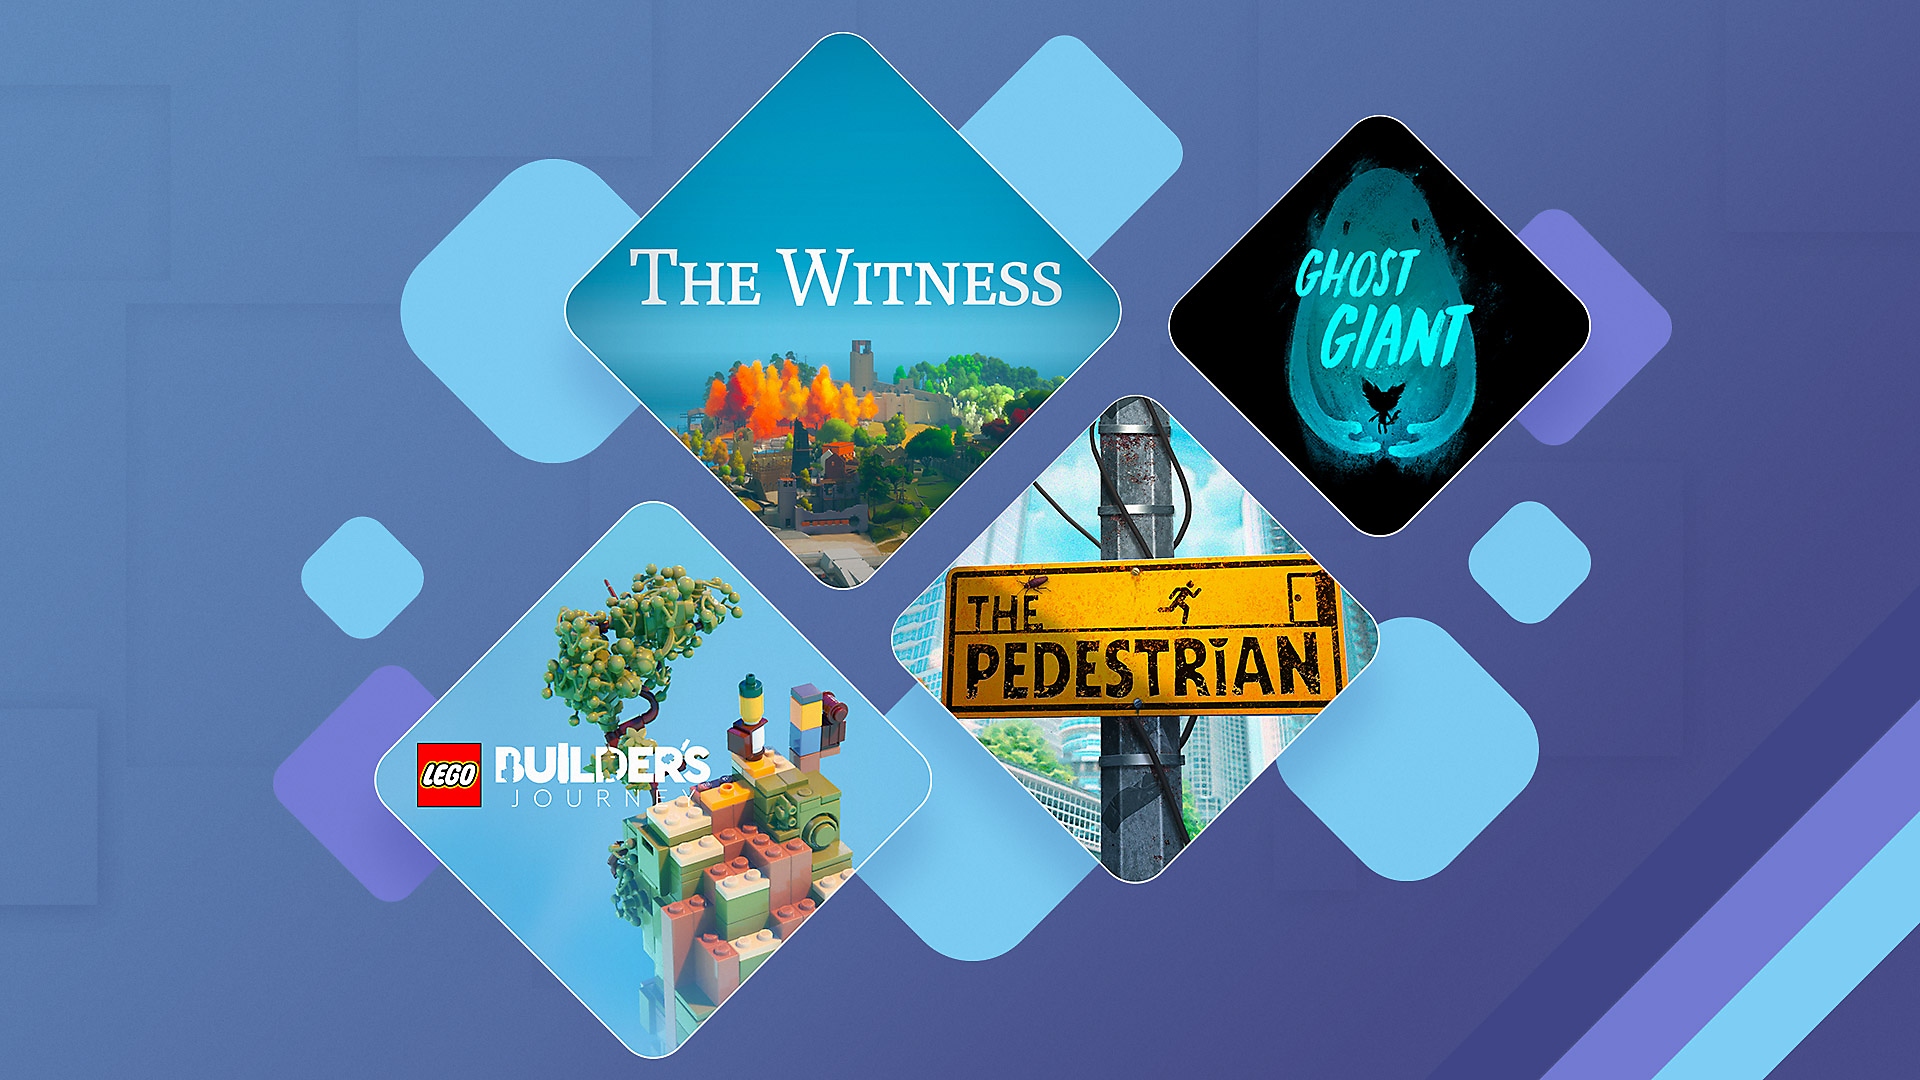 I migliori giochi di enigmi su PS4 e PS5 - Immagine promozionale che mostra The Witness, Ghost Giant, Lego Builder's Journey e The Pedestrian.